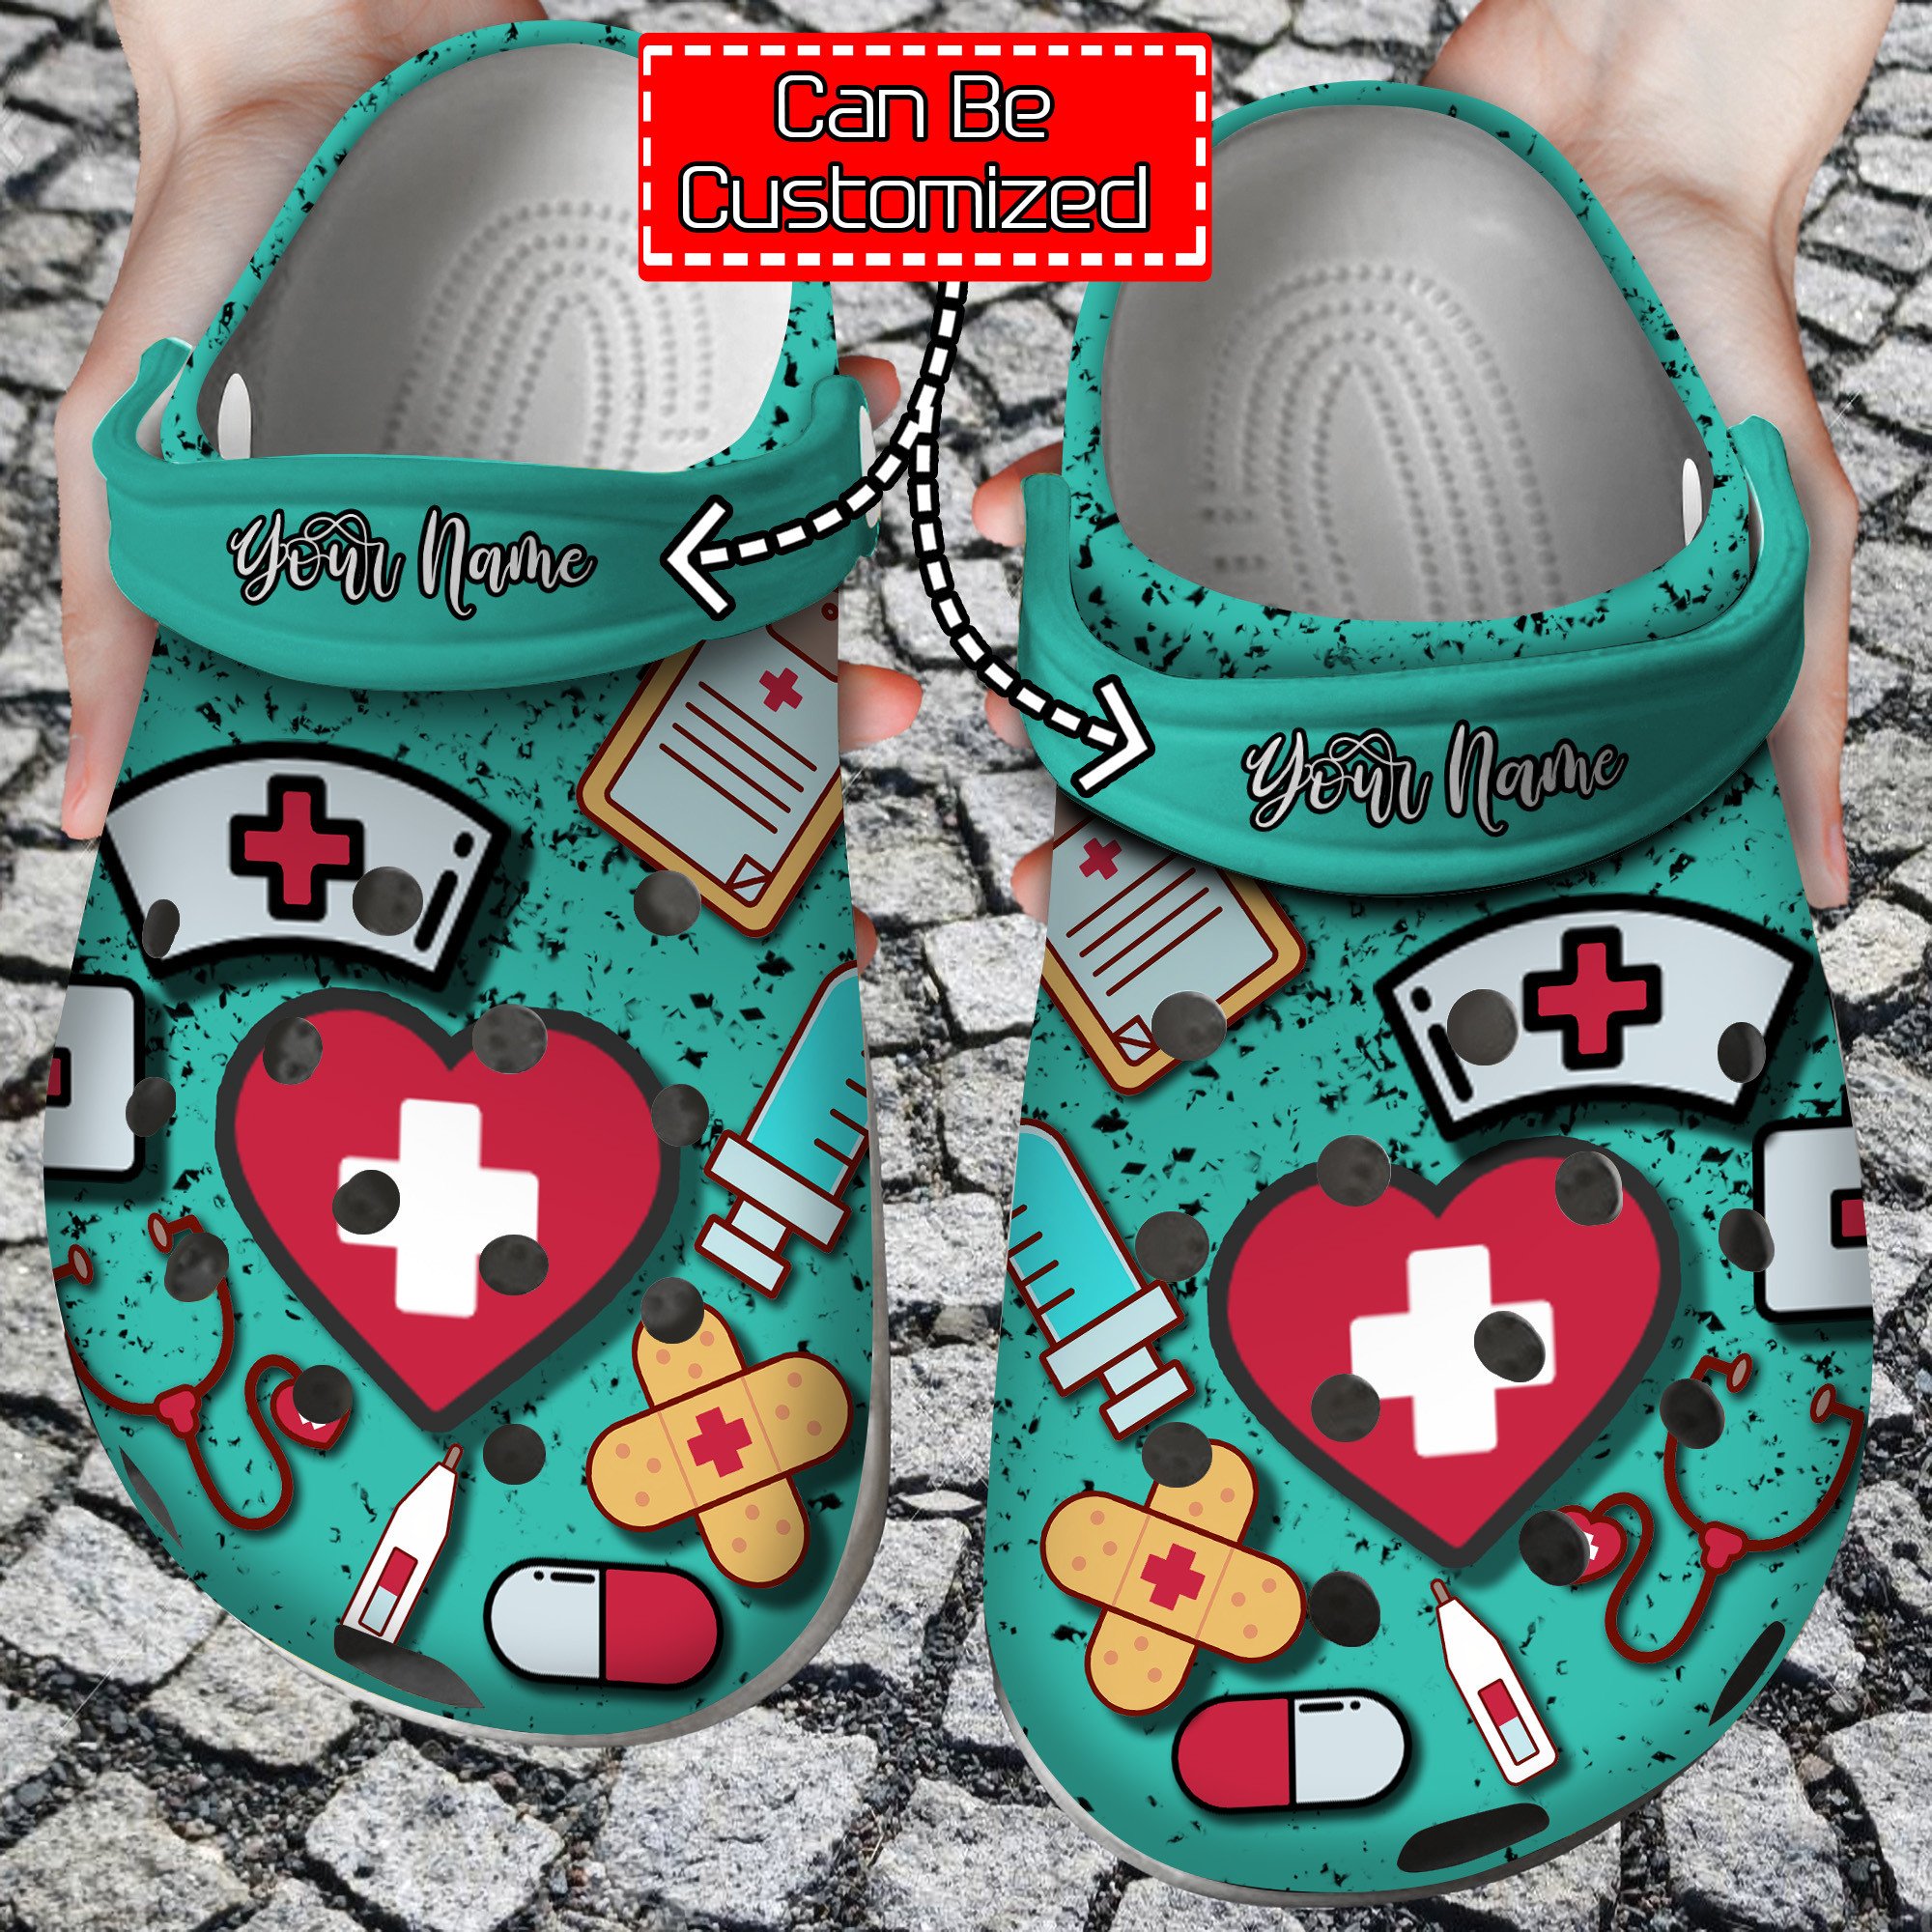 Nurse Crocs – Personalized Clogs Shoes With Symbols